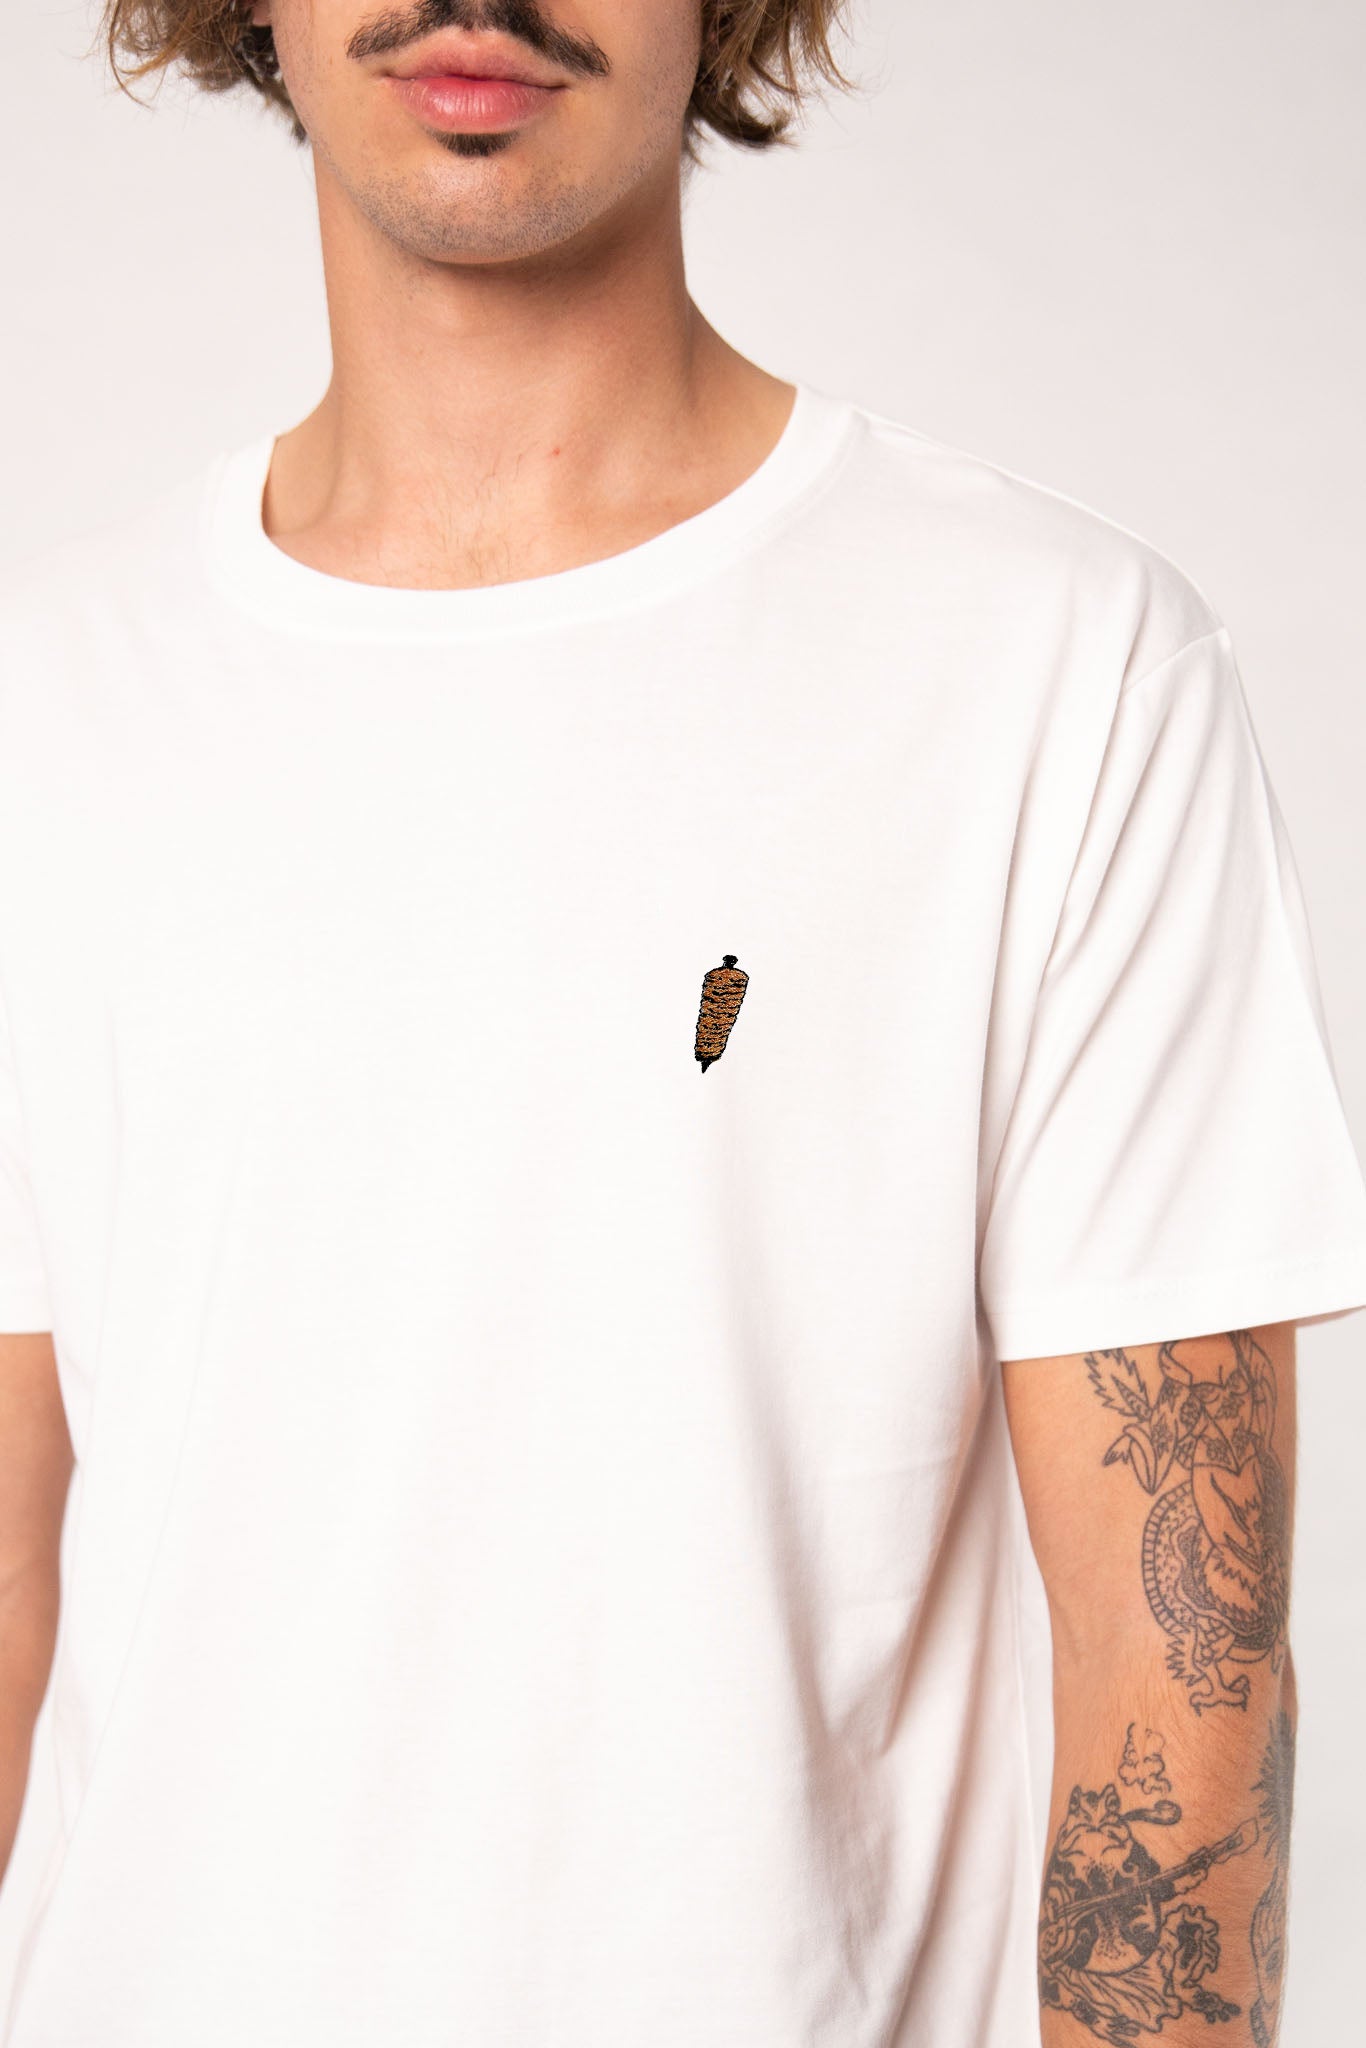 Dönerspieß | Besticktes Männer Bio Baumwoll T-Shirt